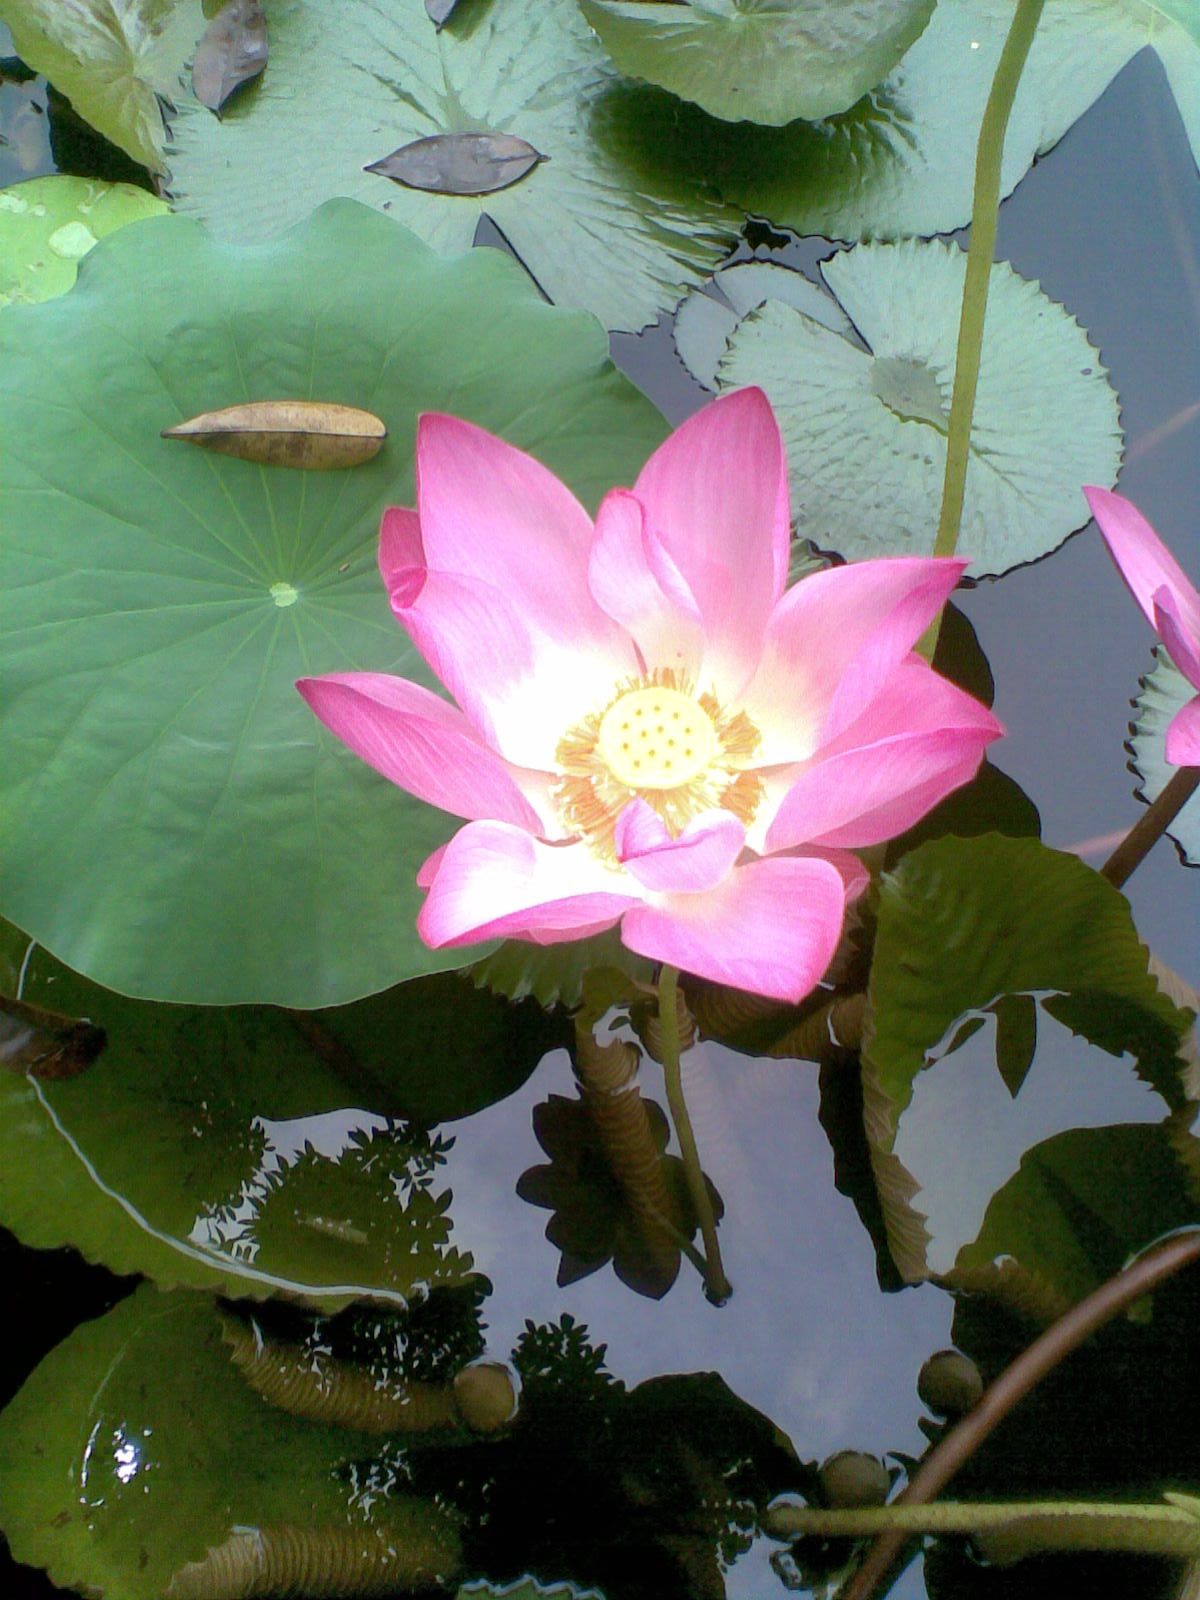  Foto  Bunga  Teratai  Water Lily Pictures Jangan Lebay 